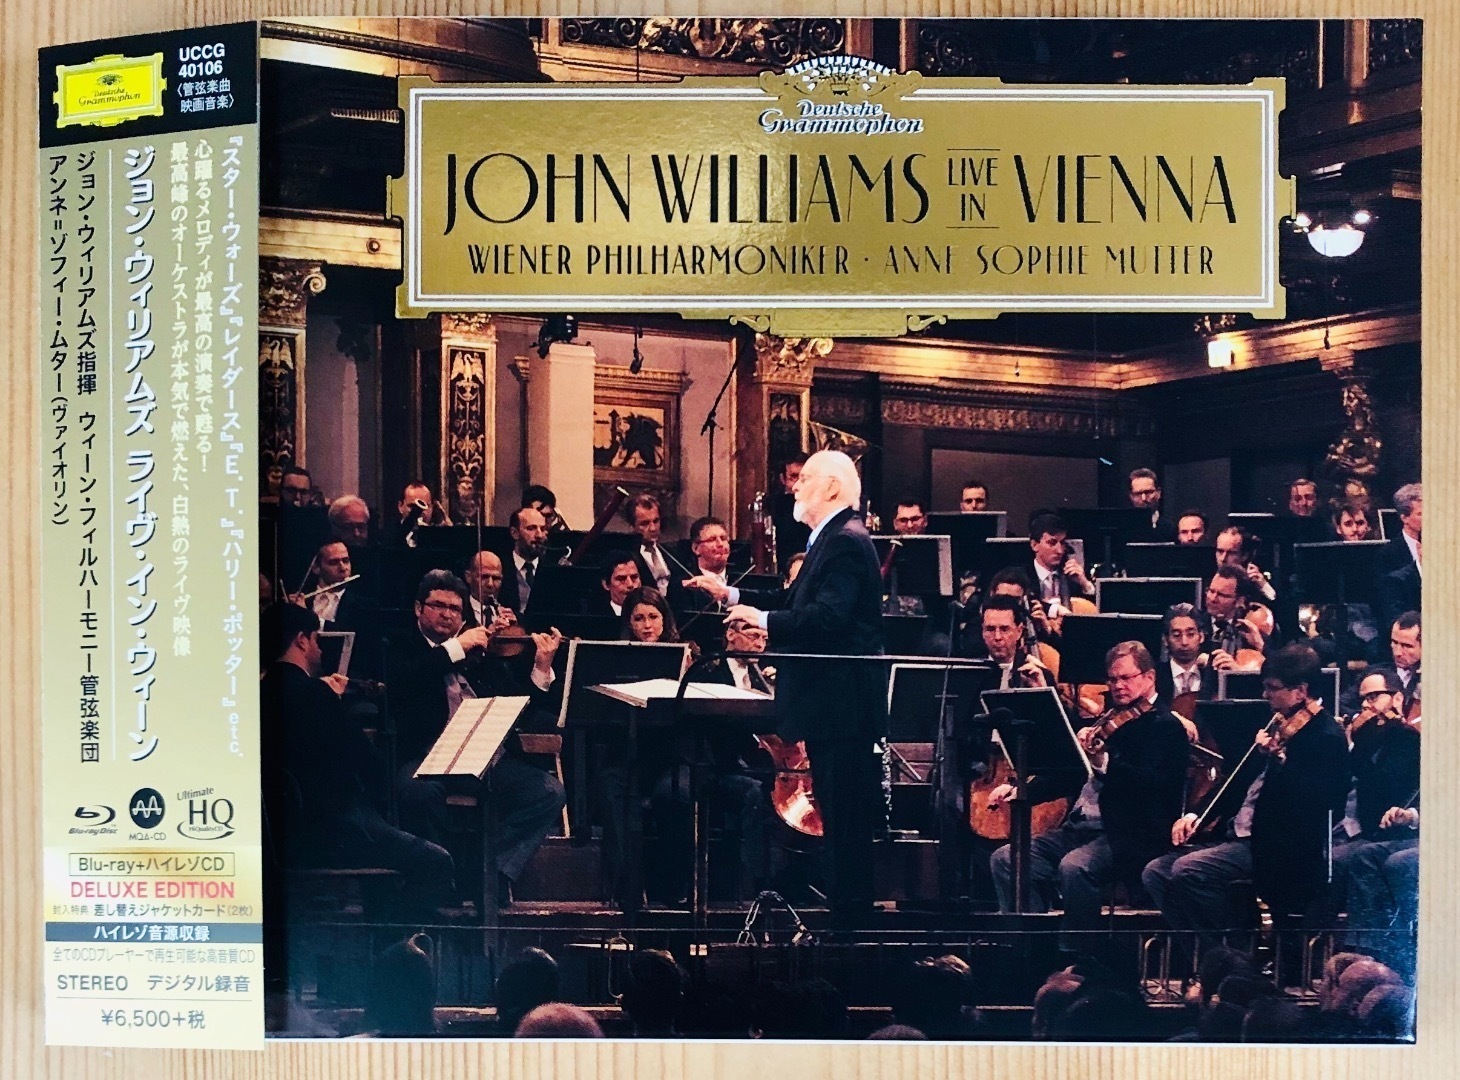 ジョン ウィリアムズとウィーン フィルによる夢の共演 アルバム ジョン ウィリアムズ ライヴ イン ウィーン を観て こだわりの挽きたてクラシックカフェ